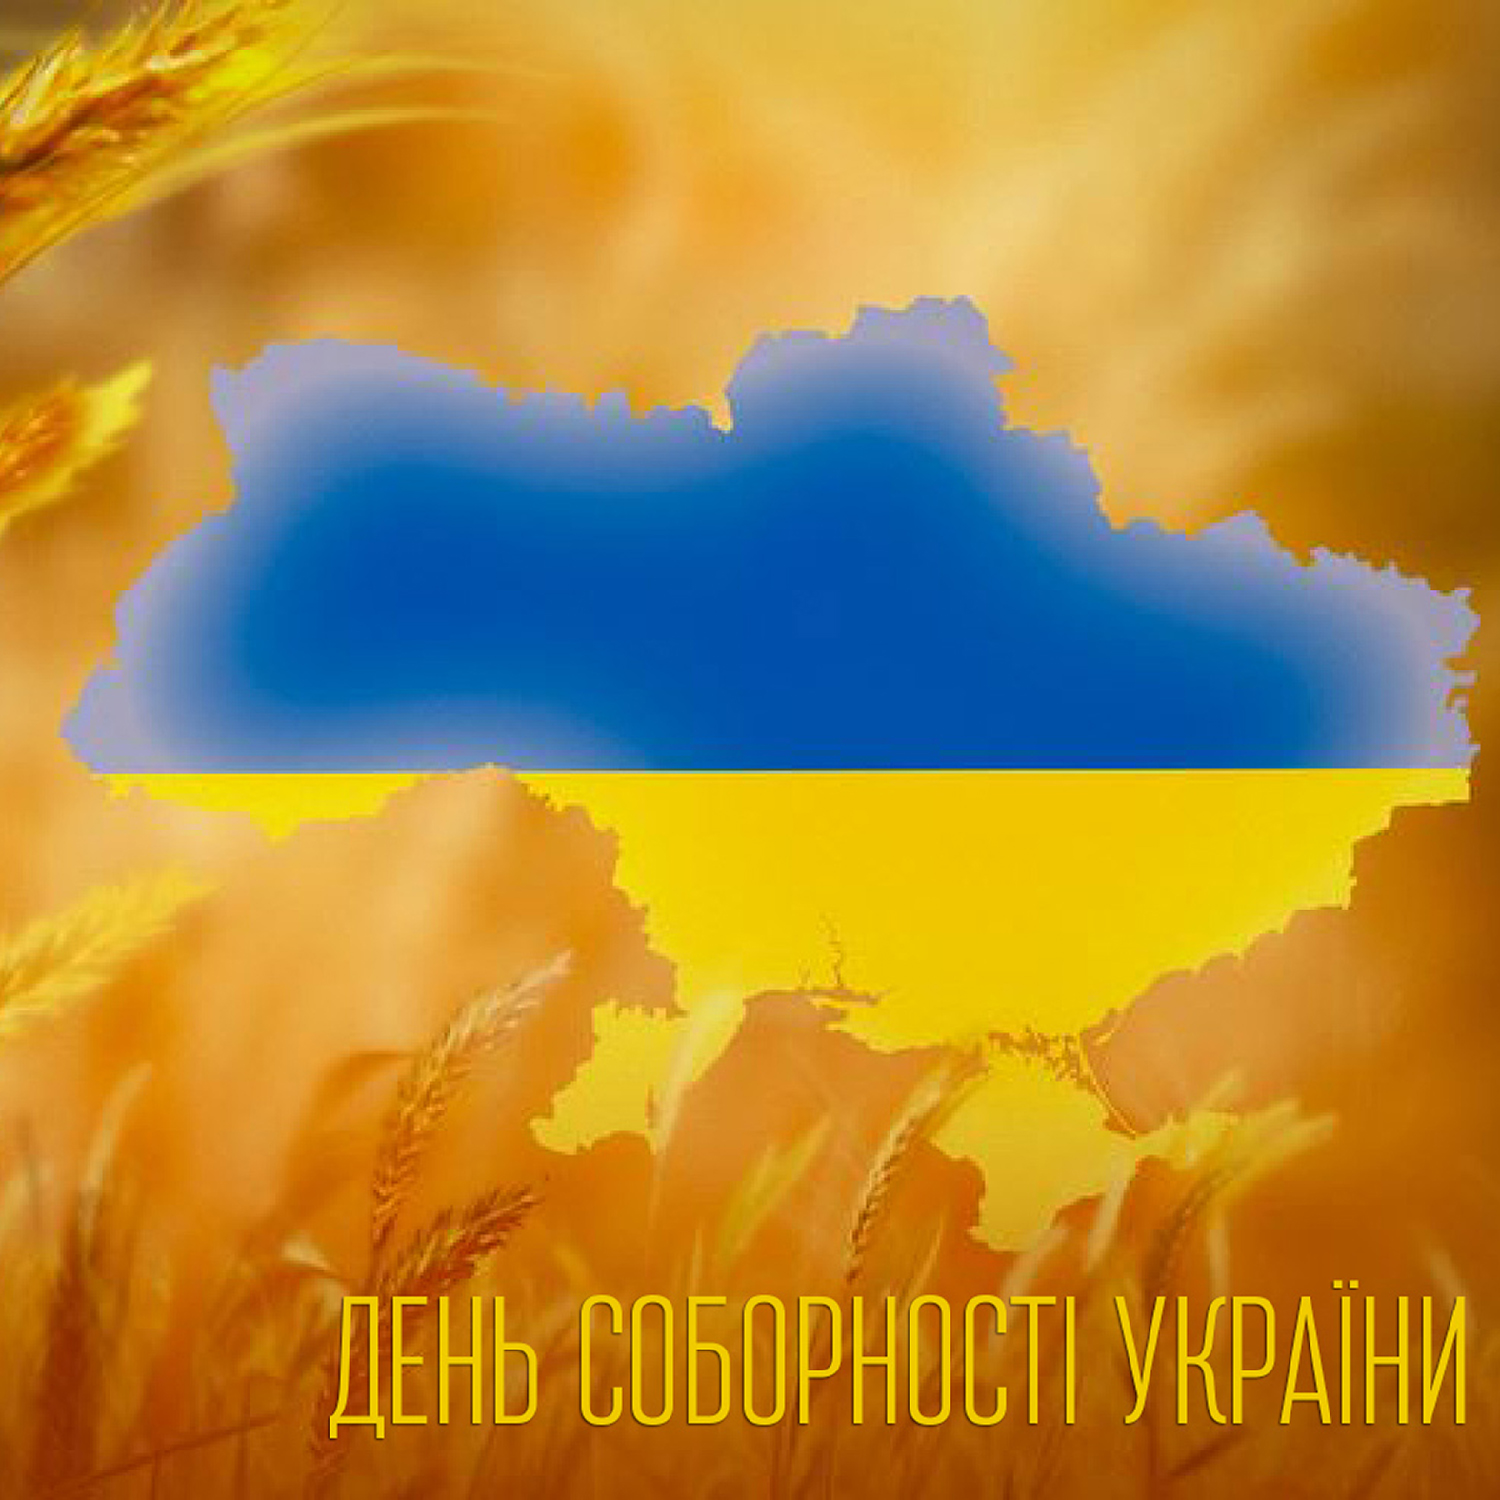 Щороку 22 січня в день проголошення Акту Злуки Української Народної Республіки та Західноукраїнської Народної Республіки Україна відзначає День Соборності.